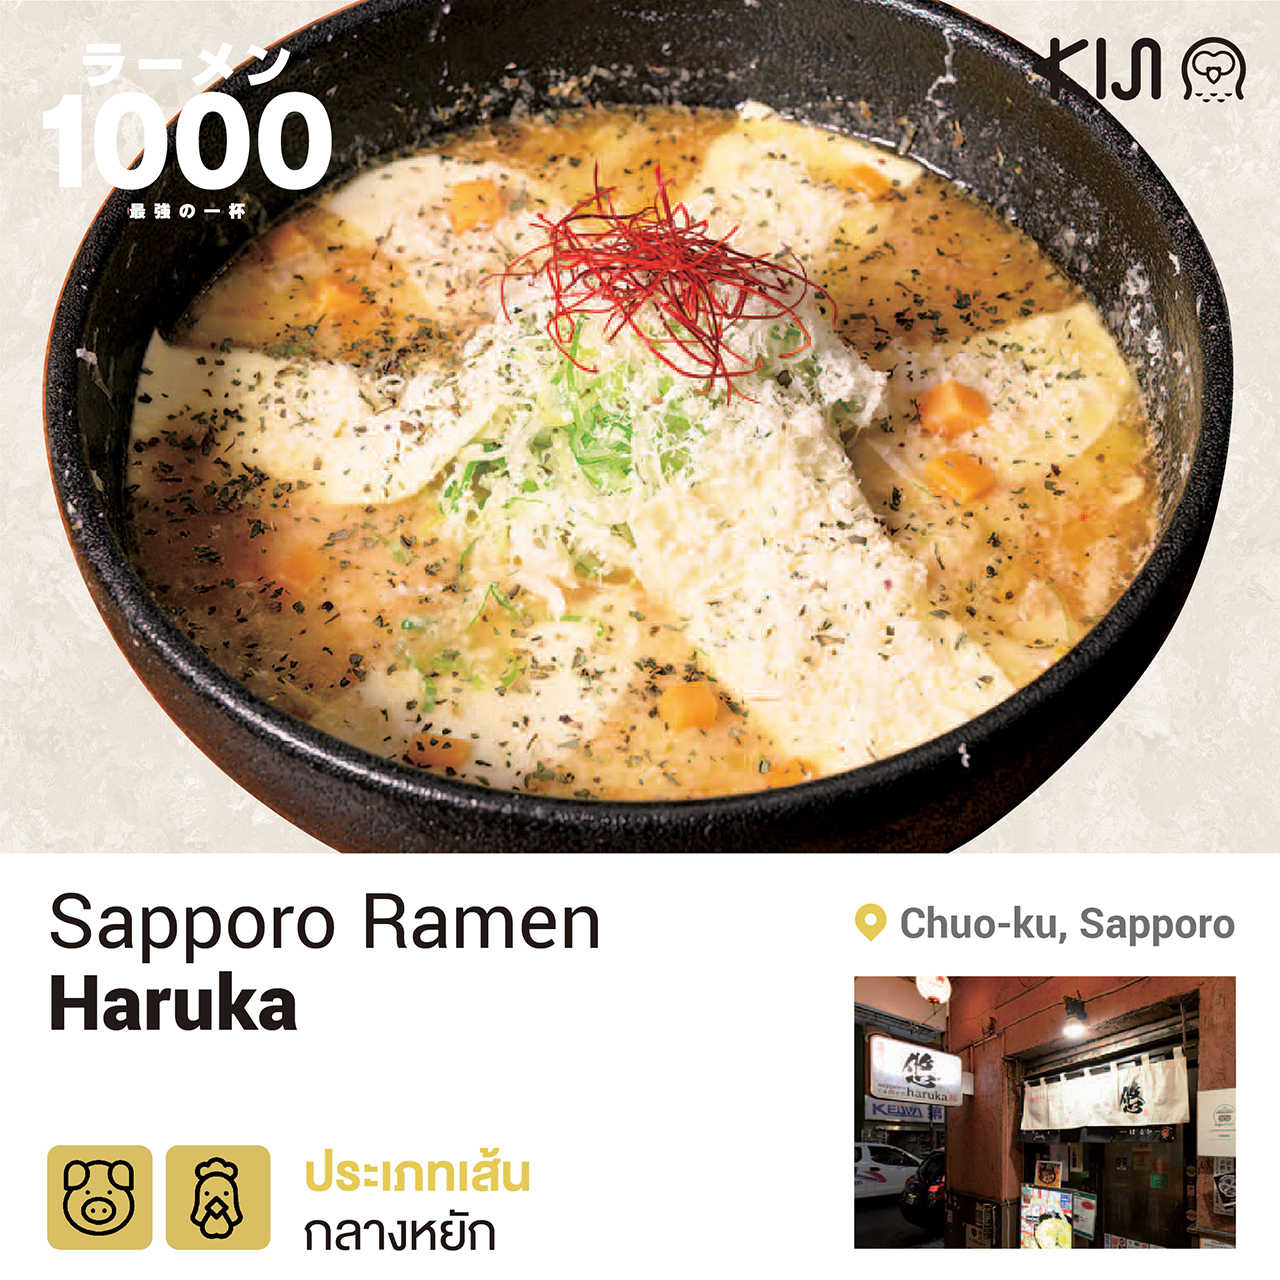 ร้านราเมน เขตชูโอ เมืองซัปโปโร จ.ฮอกไกโด - Sapporo Ramen Haruka